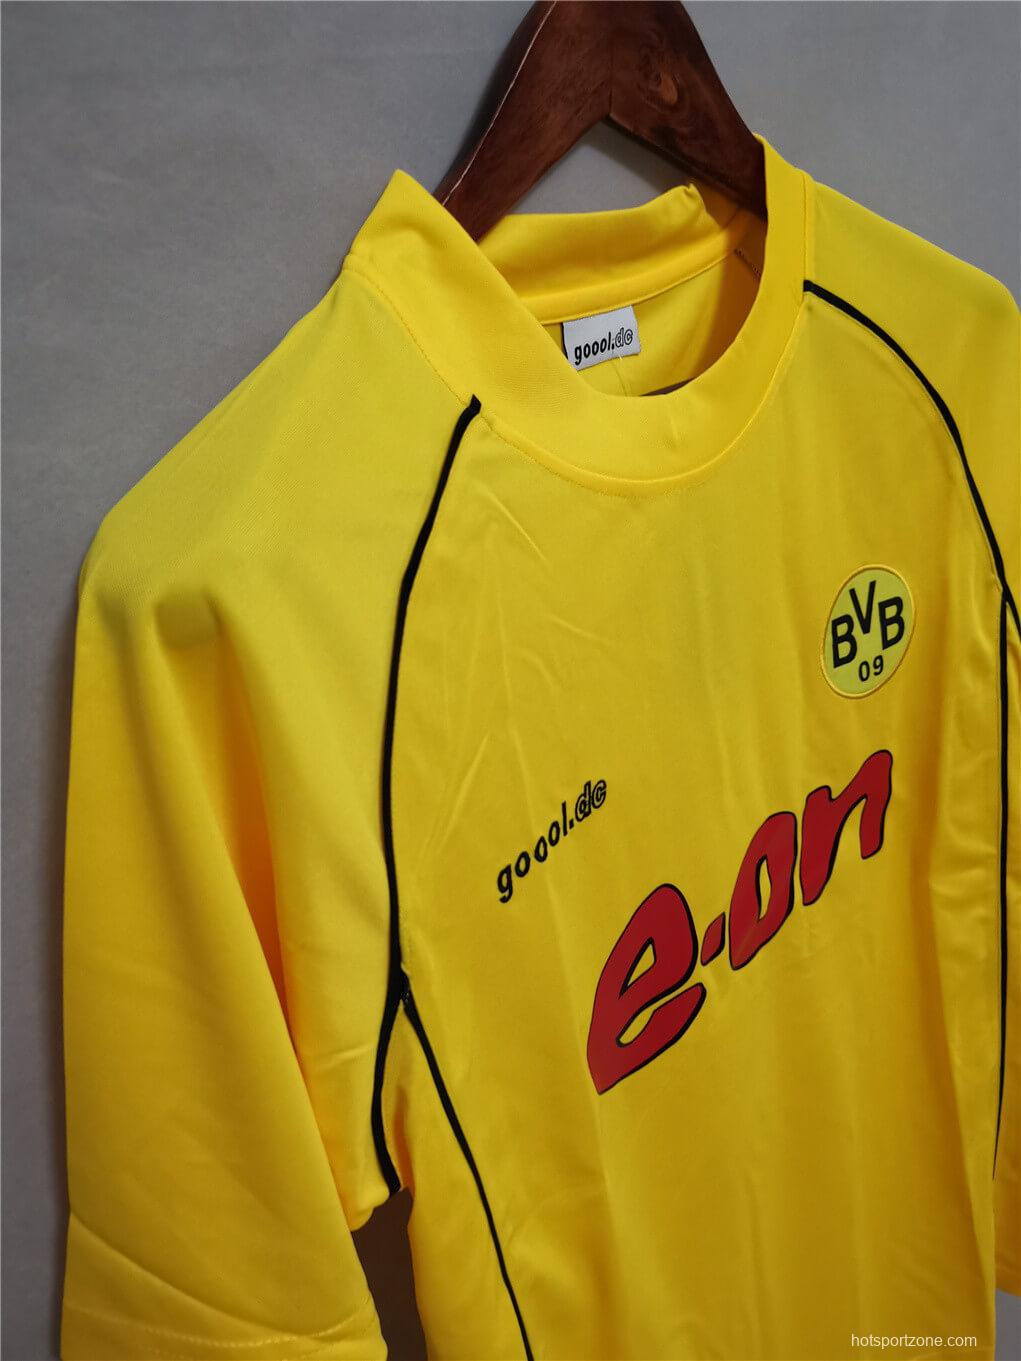 Retro 01/02 Borussia Dortmund Champions League Jersey